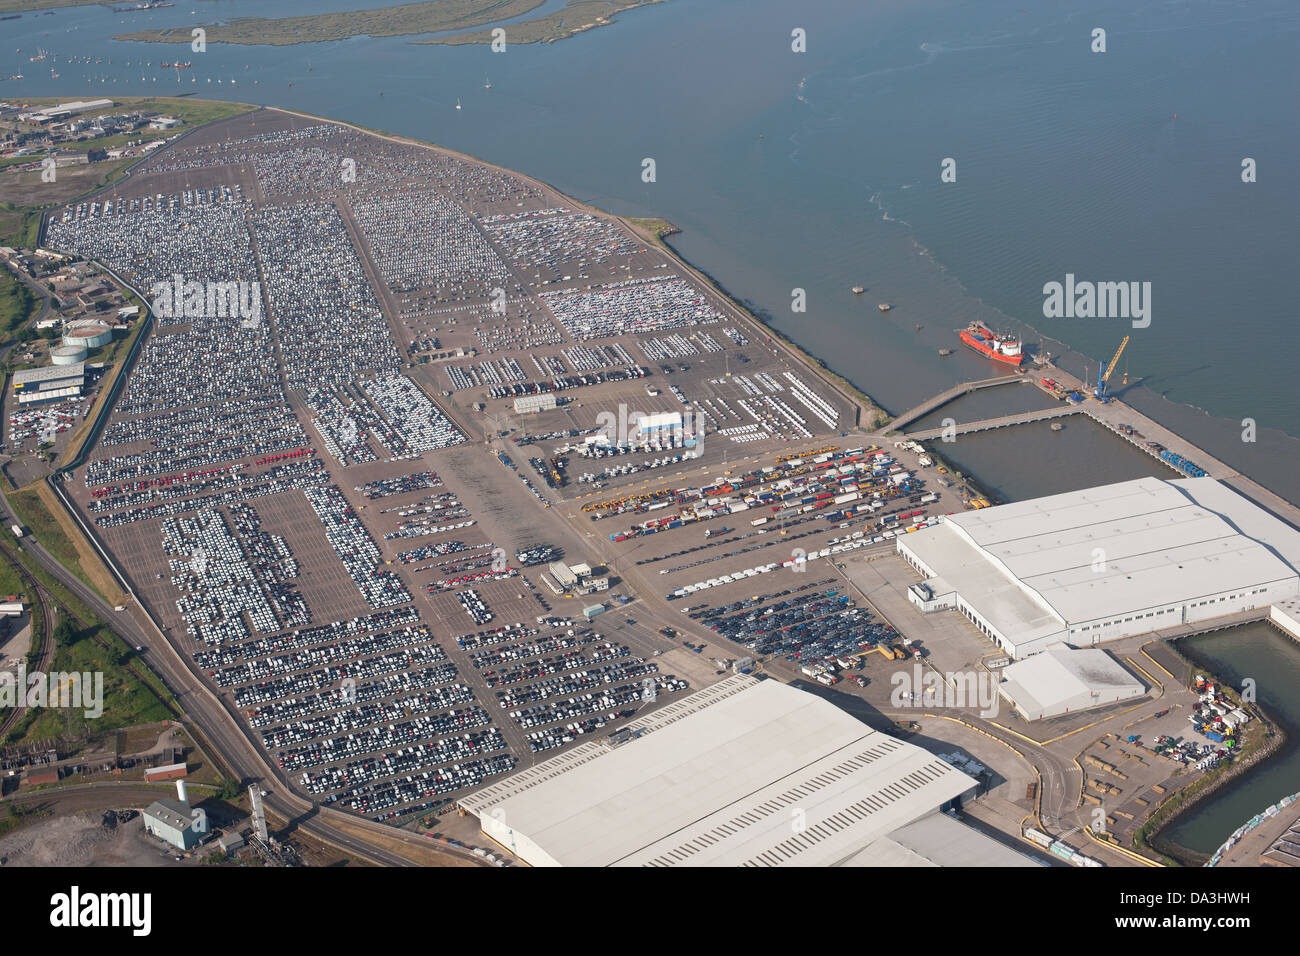 VUE AÉRIENNE.Vaste dépôt de voitures.Estuaire de la Tamise, Sheerness, île de Shepey, Kent, Angleterre,Grande-Bretagne, Royaume-Uni. Banque D'Images